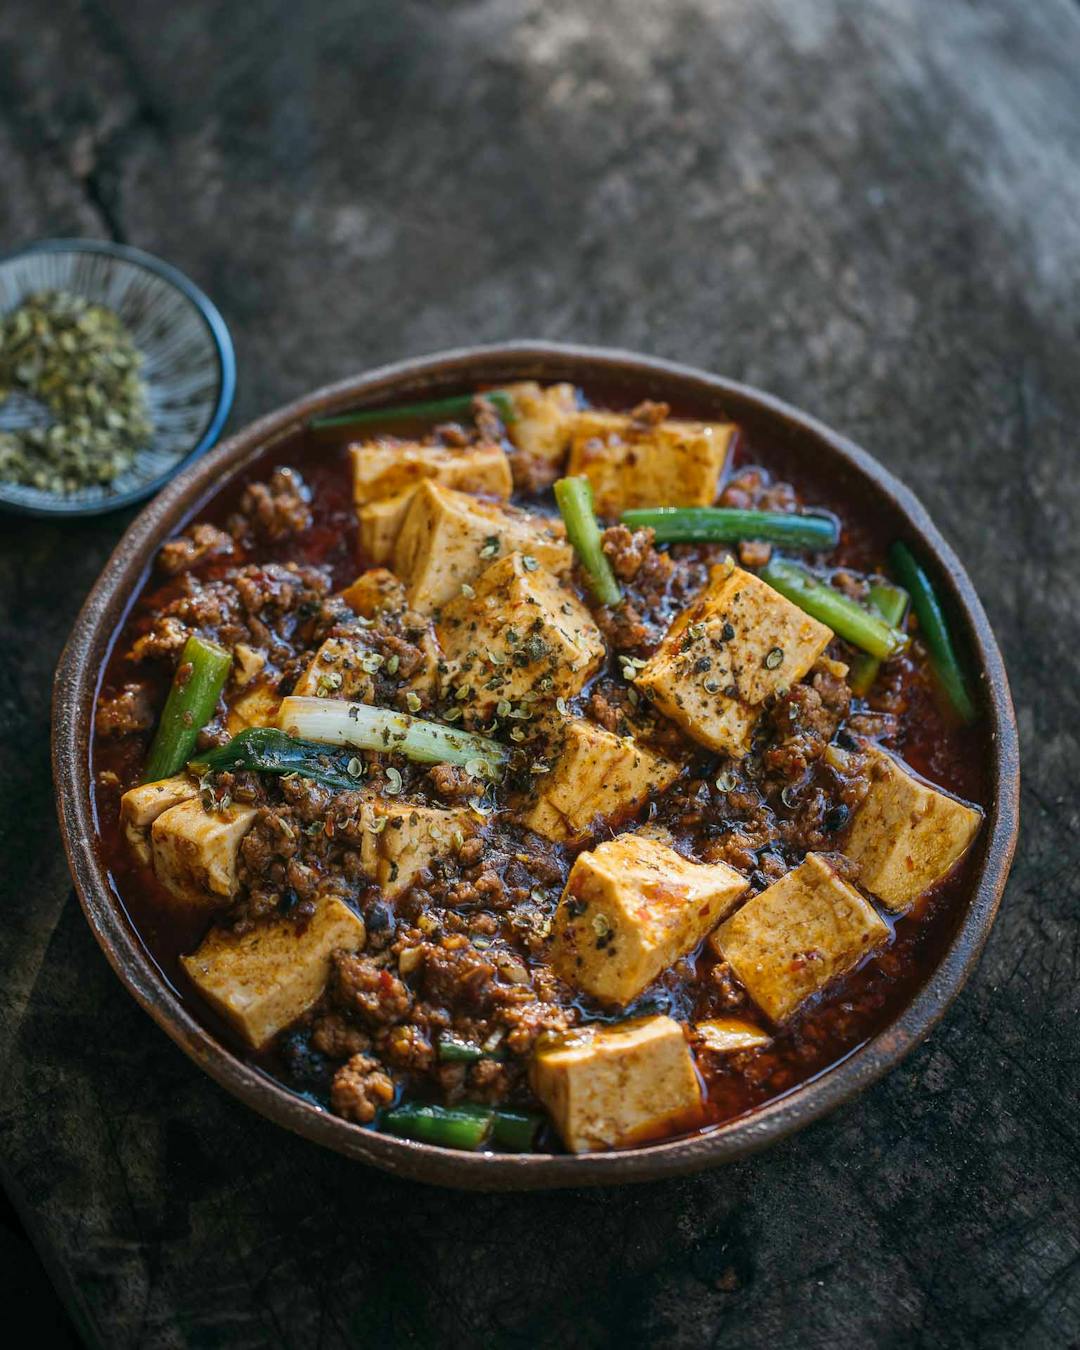 Authentic Mapo Tofu